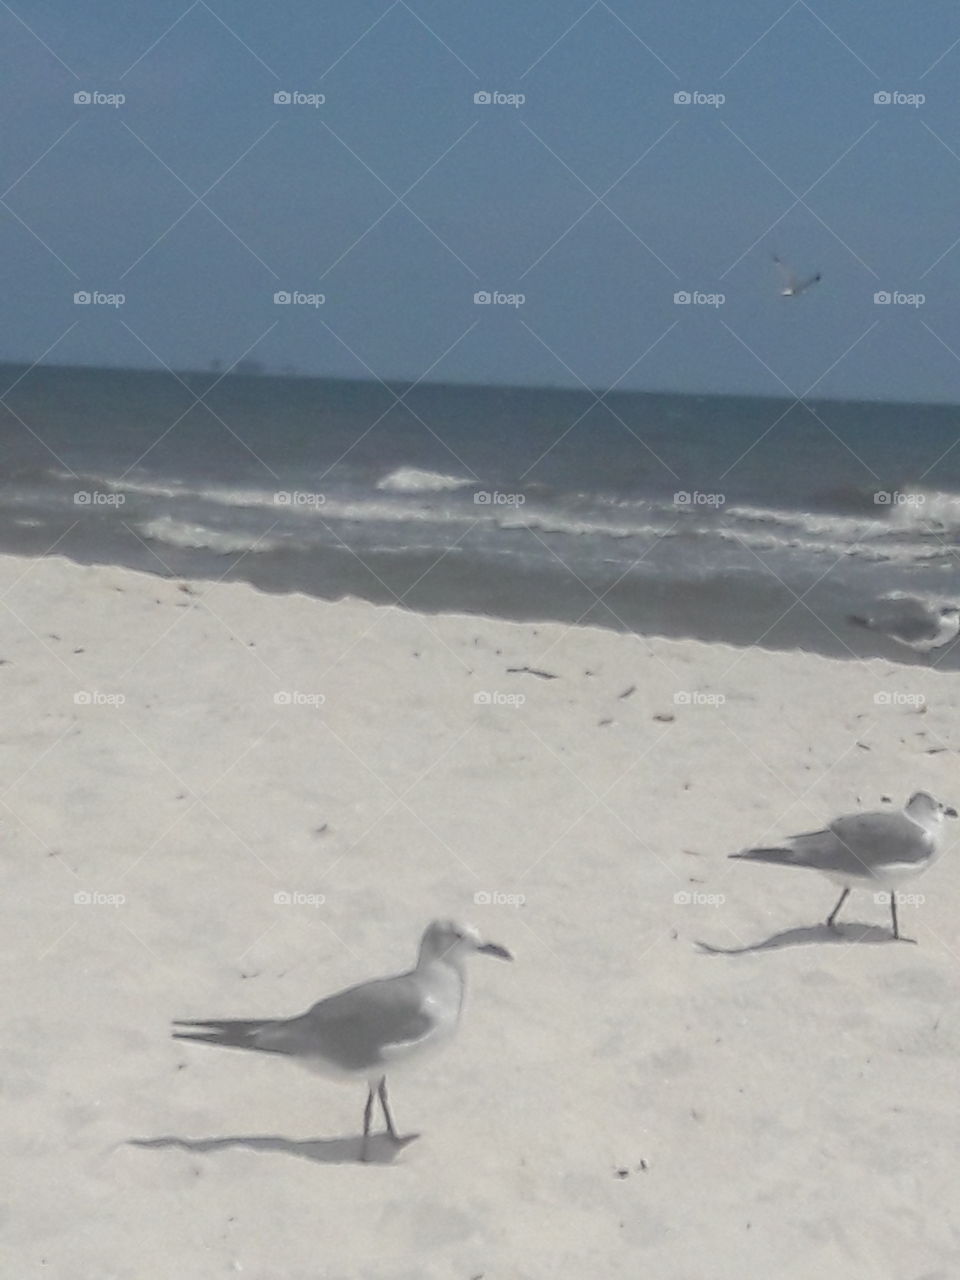 Seagulls on Dauphen beach